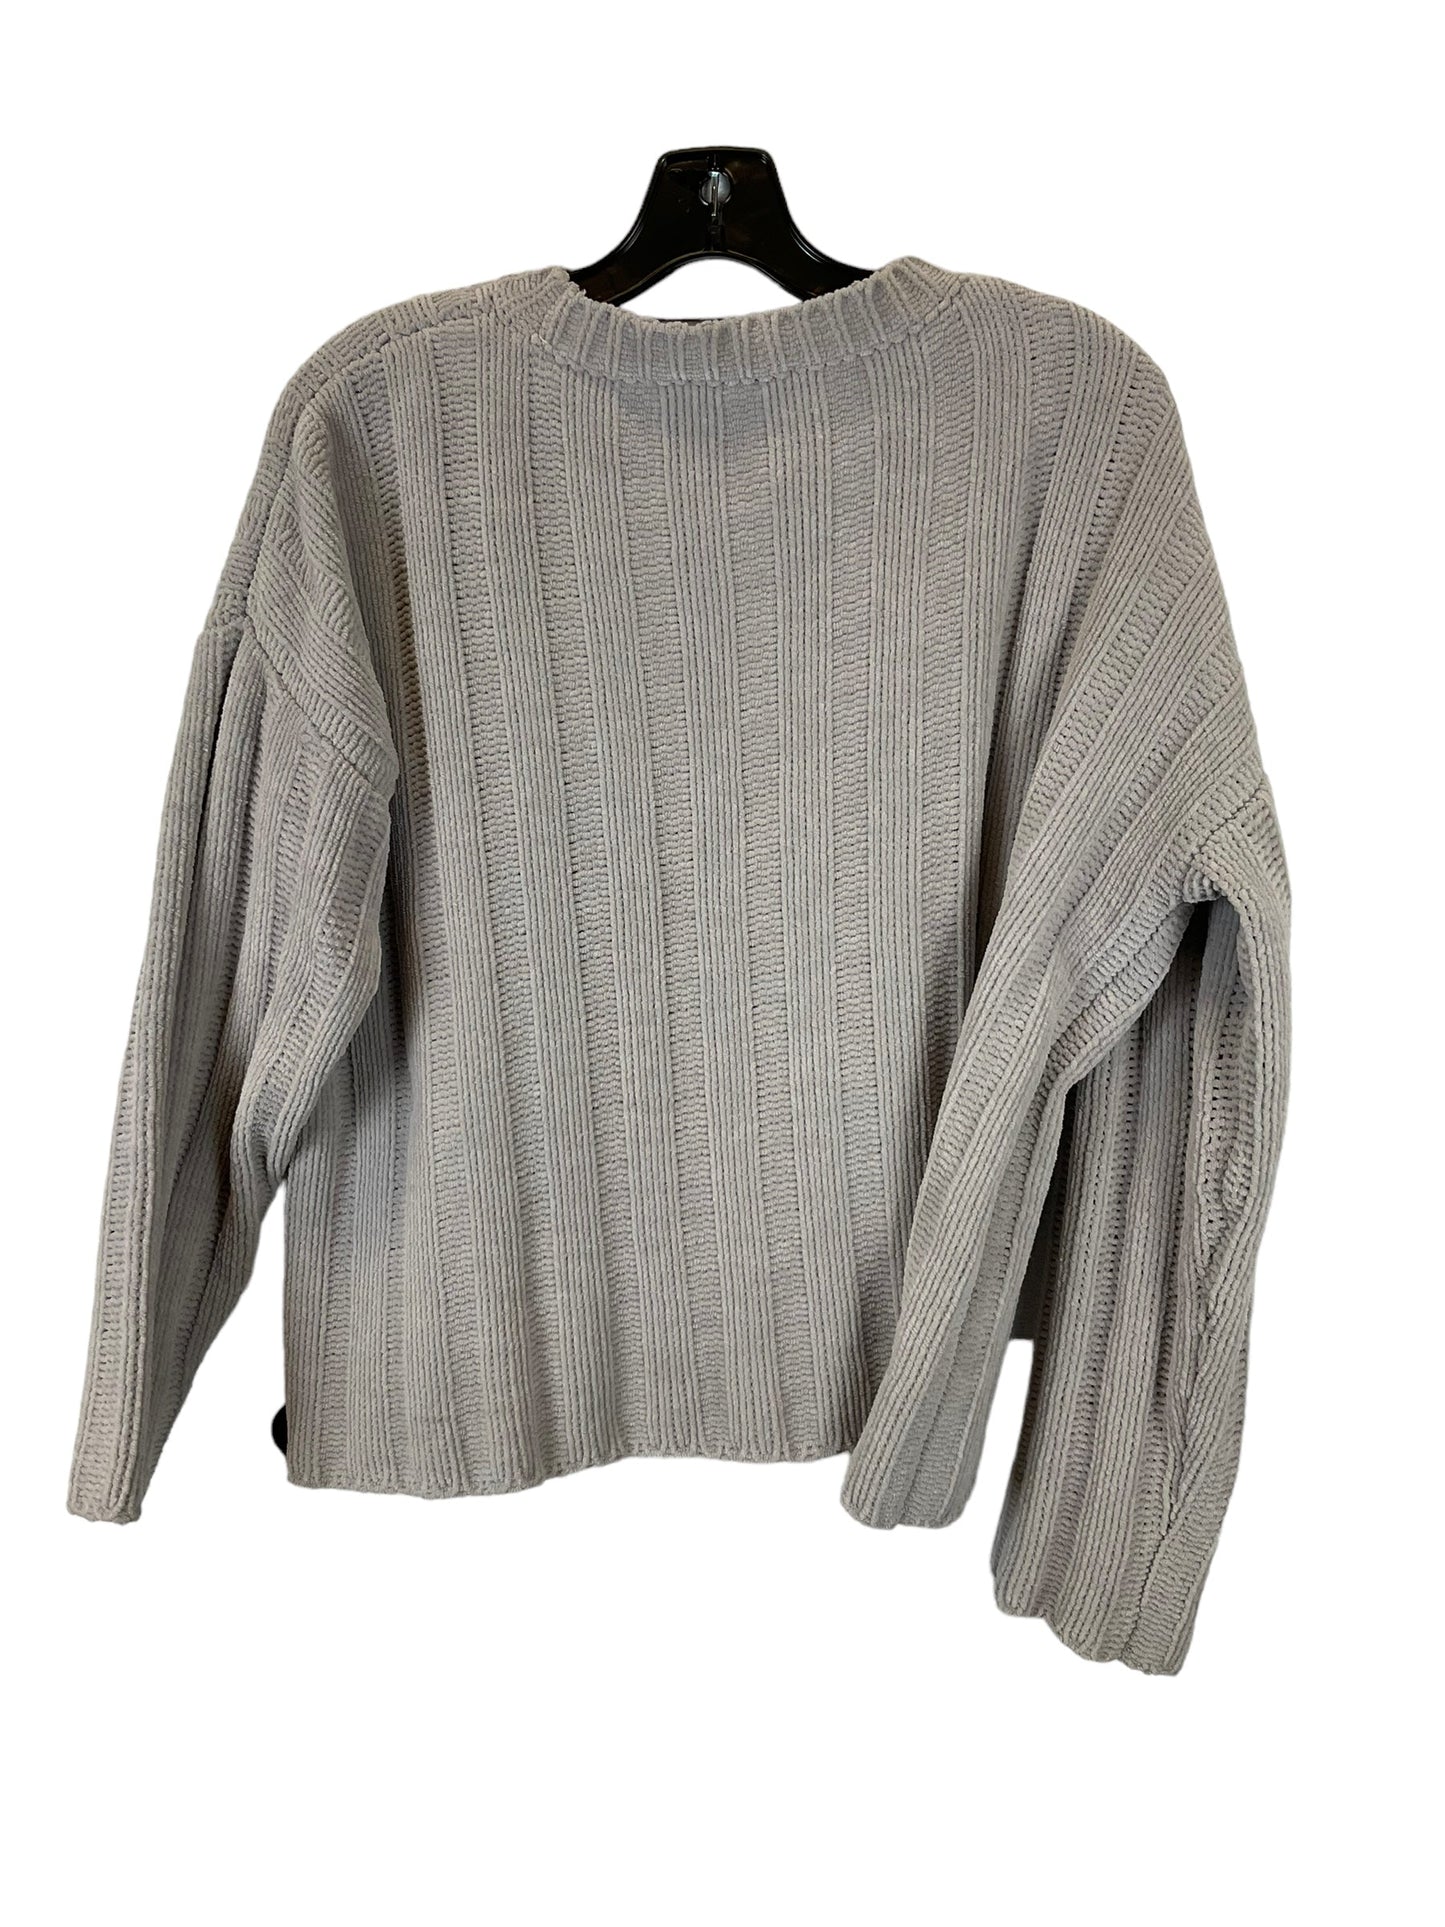 Sweater By Mango  Size: M